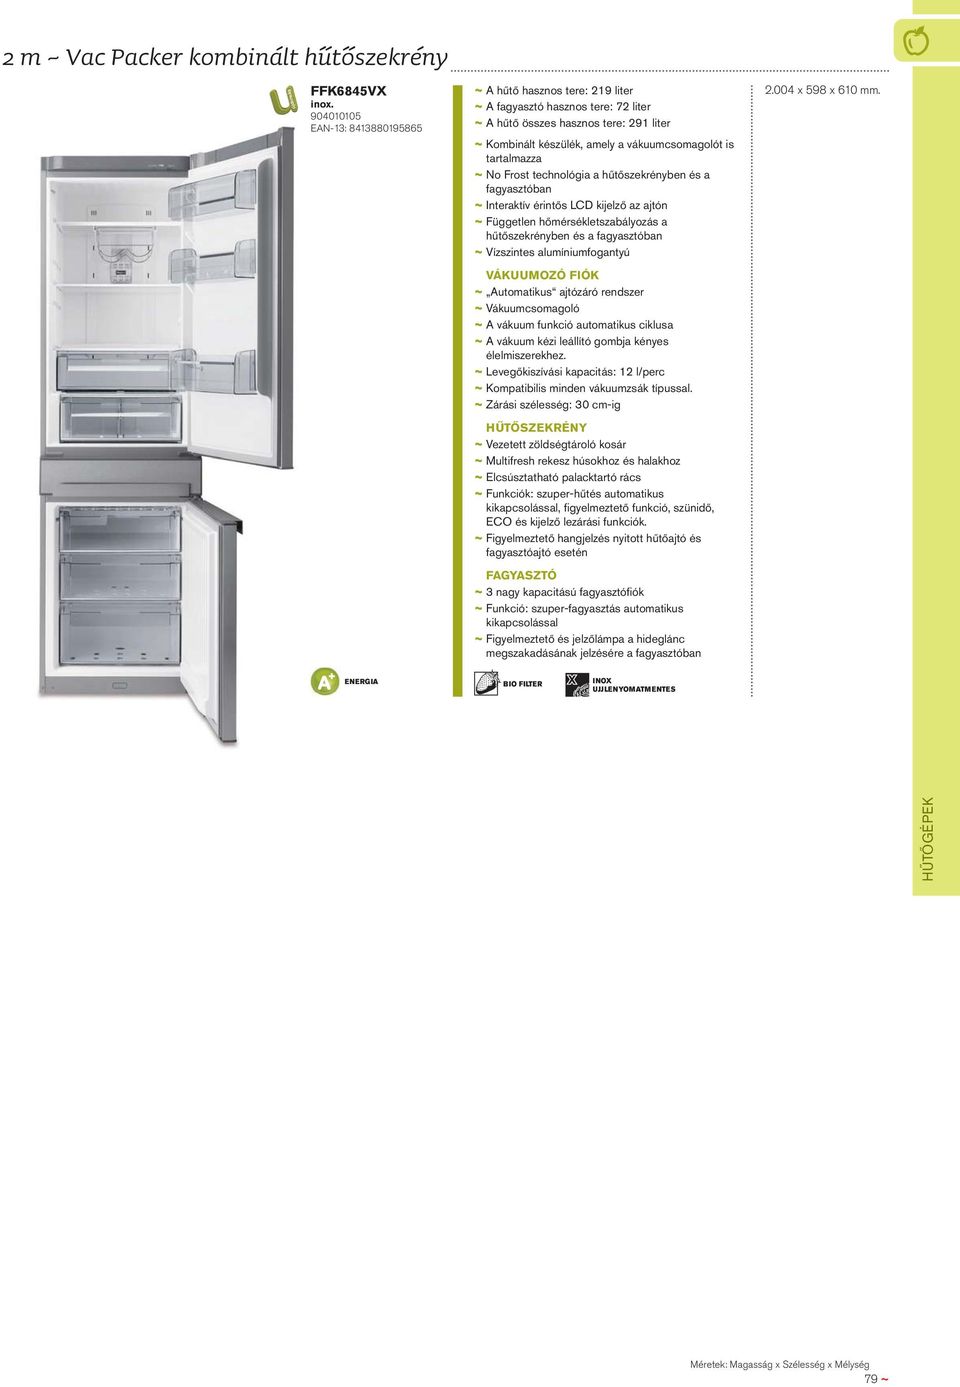 tartalmazza ~ No Frost technológia a hűtőszekrényben és a fagyasztóban ~ Interaktív érintős LCD kijelző az ajtón ~ Független hőmérsékletszabályozás a hűtőszekrényben és a fagyasztóban ~ Vízszintes